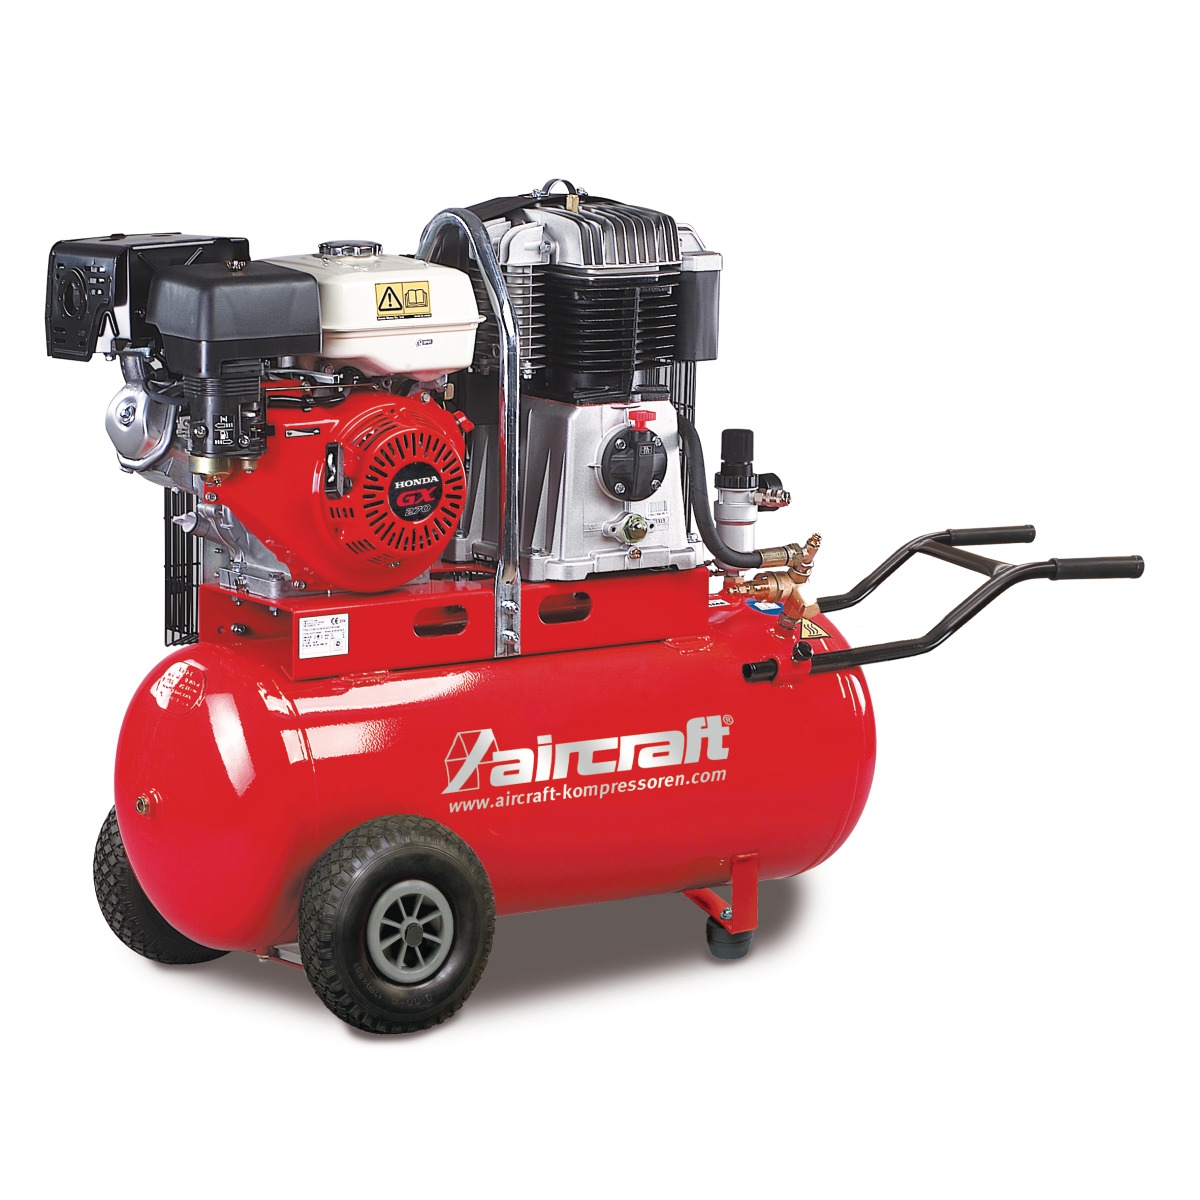 AIRCRAFT Bau-Kompressor AIRBAU 652/100 B Pro mit Honda-Verbrennungsmotor